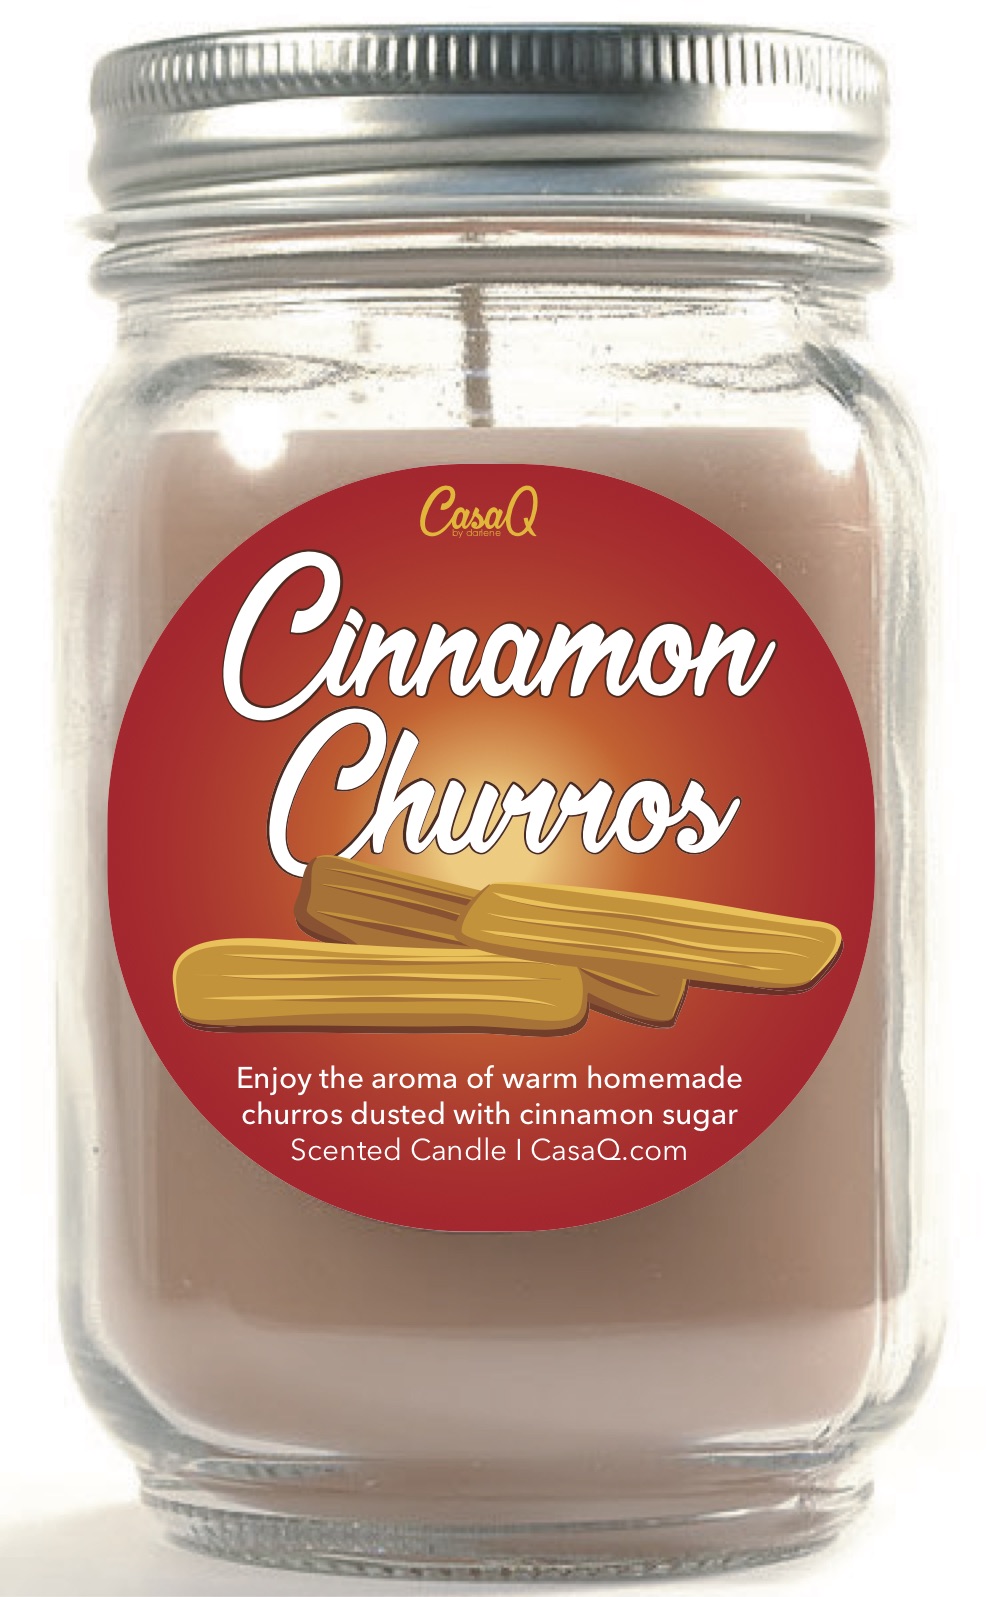 Cinnamon Churros Candle